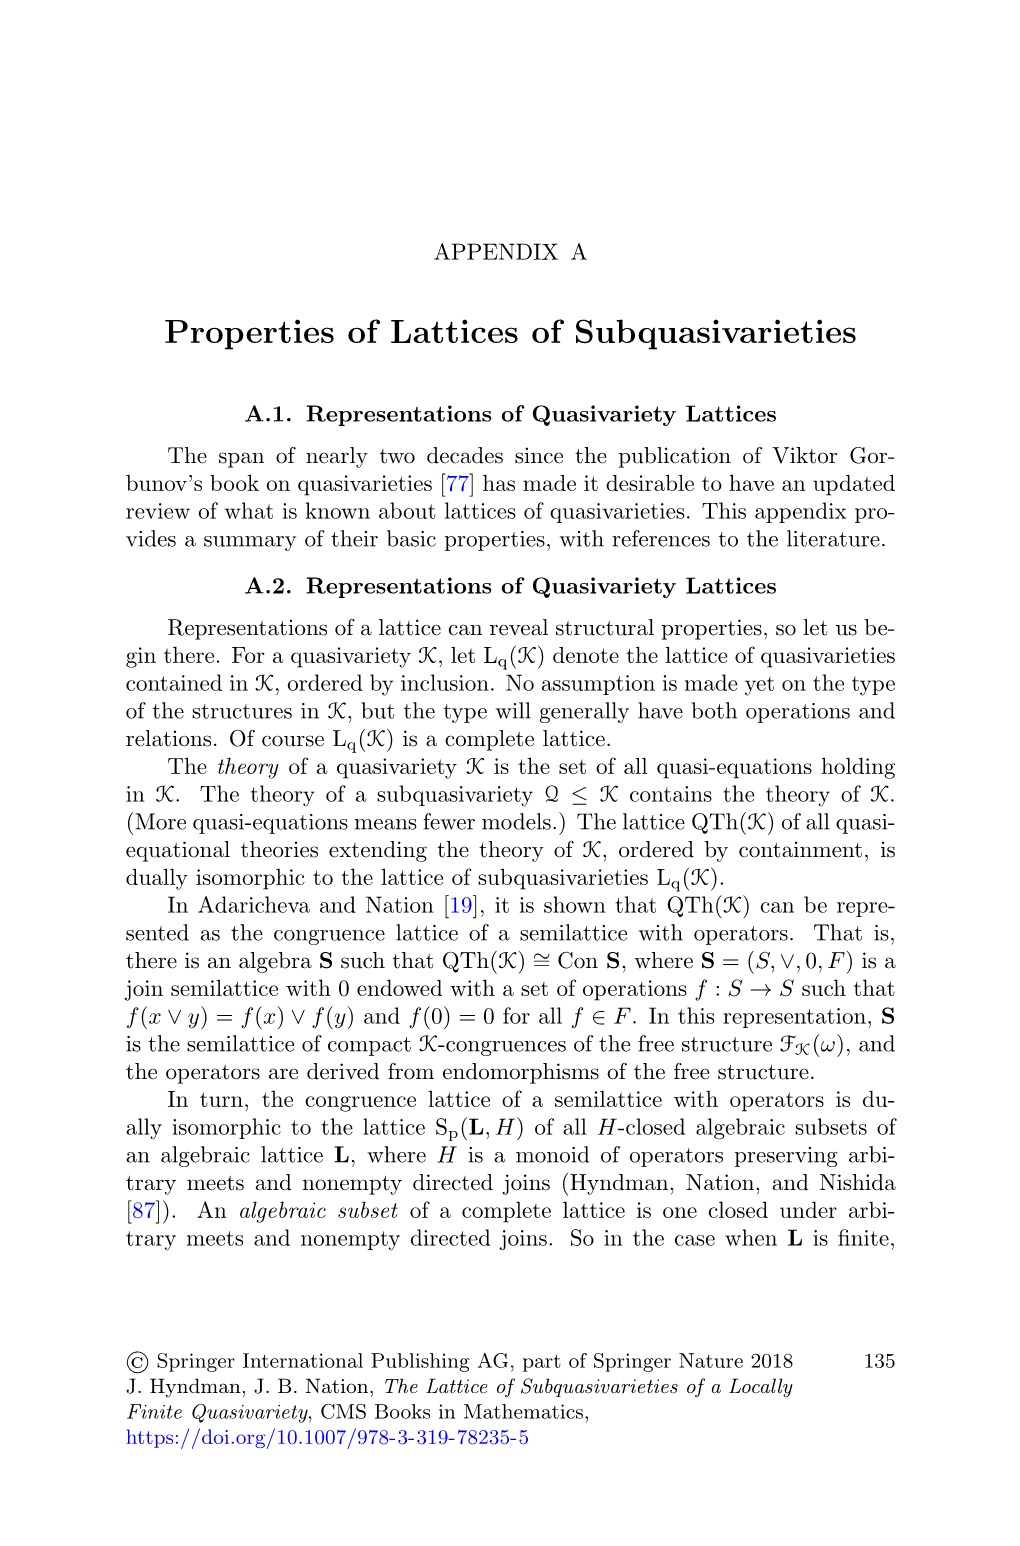 Properties of Lattices of Subquasivarieties